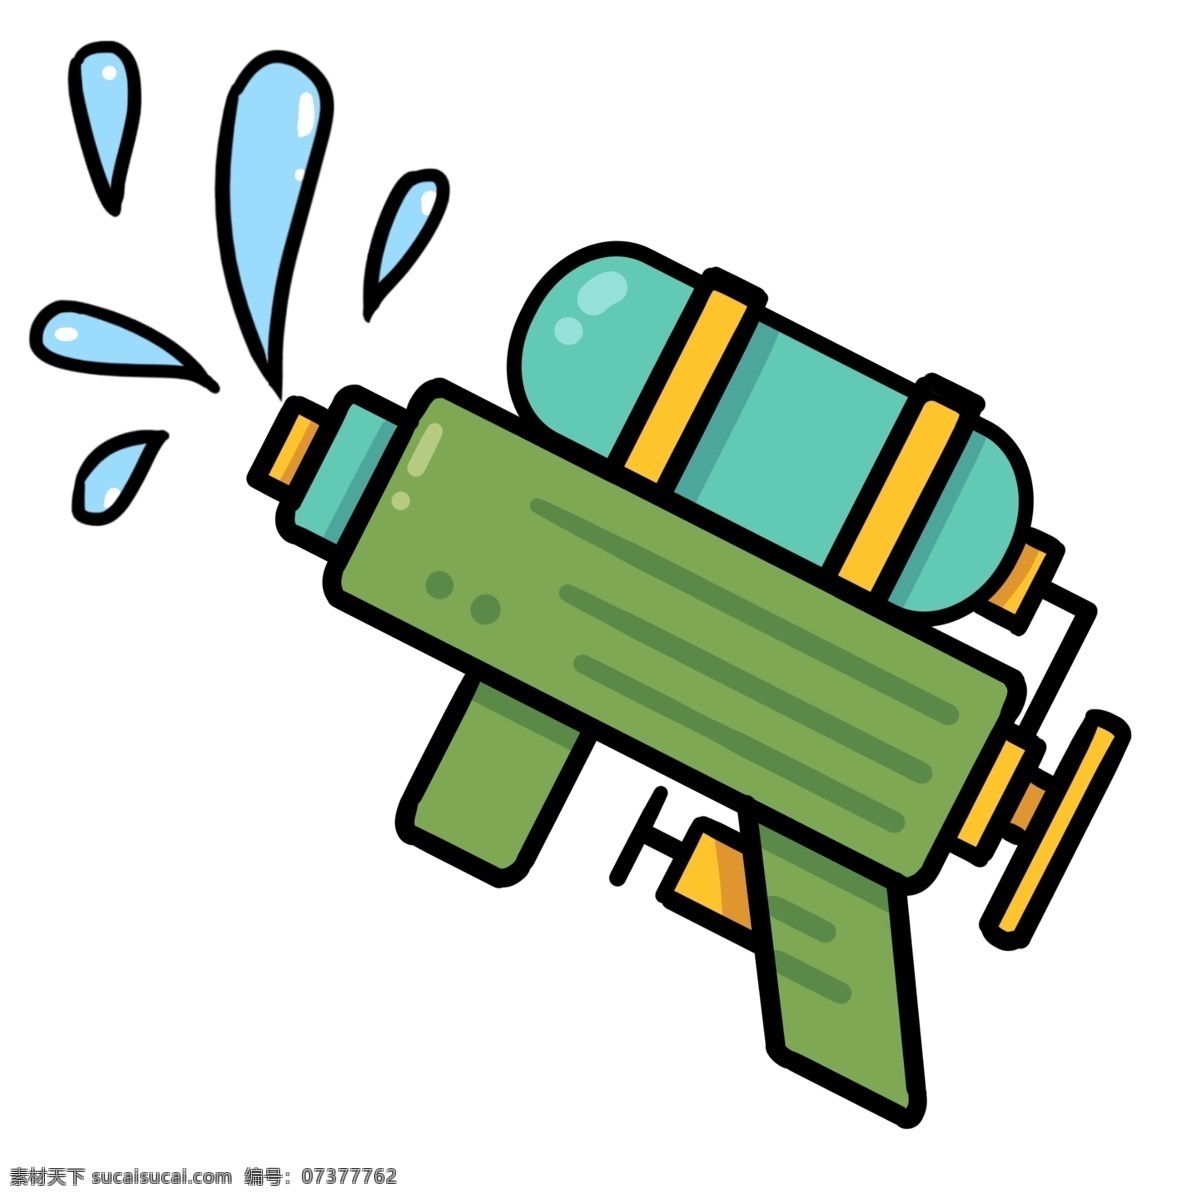 玩具 水枪 装饰 插画 玩具水枪 漂亮的水枪 绿色的水枪 精美水枪 儿童水枪 水枪装饰 水枪插画